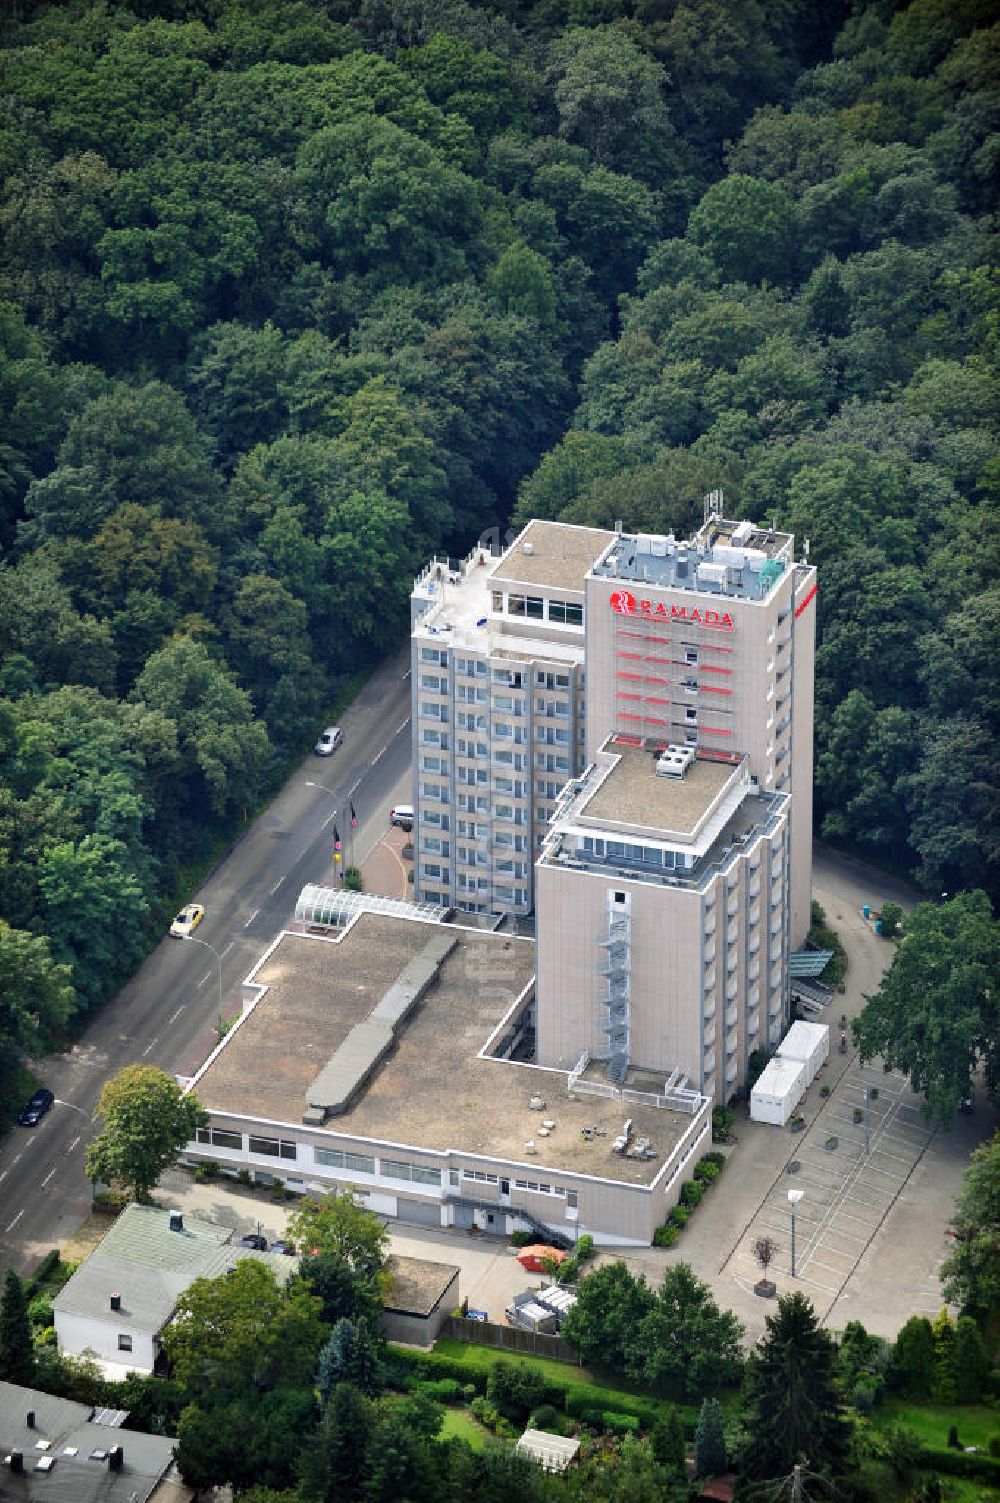 Luftbild Frankfurt am Main OT Nied - Ramada Hotel in Frankfurt am Main / Nied in Hessen